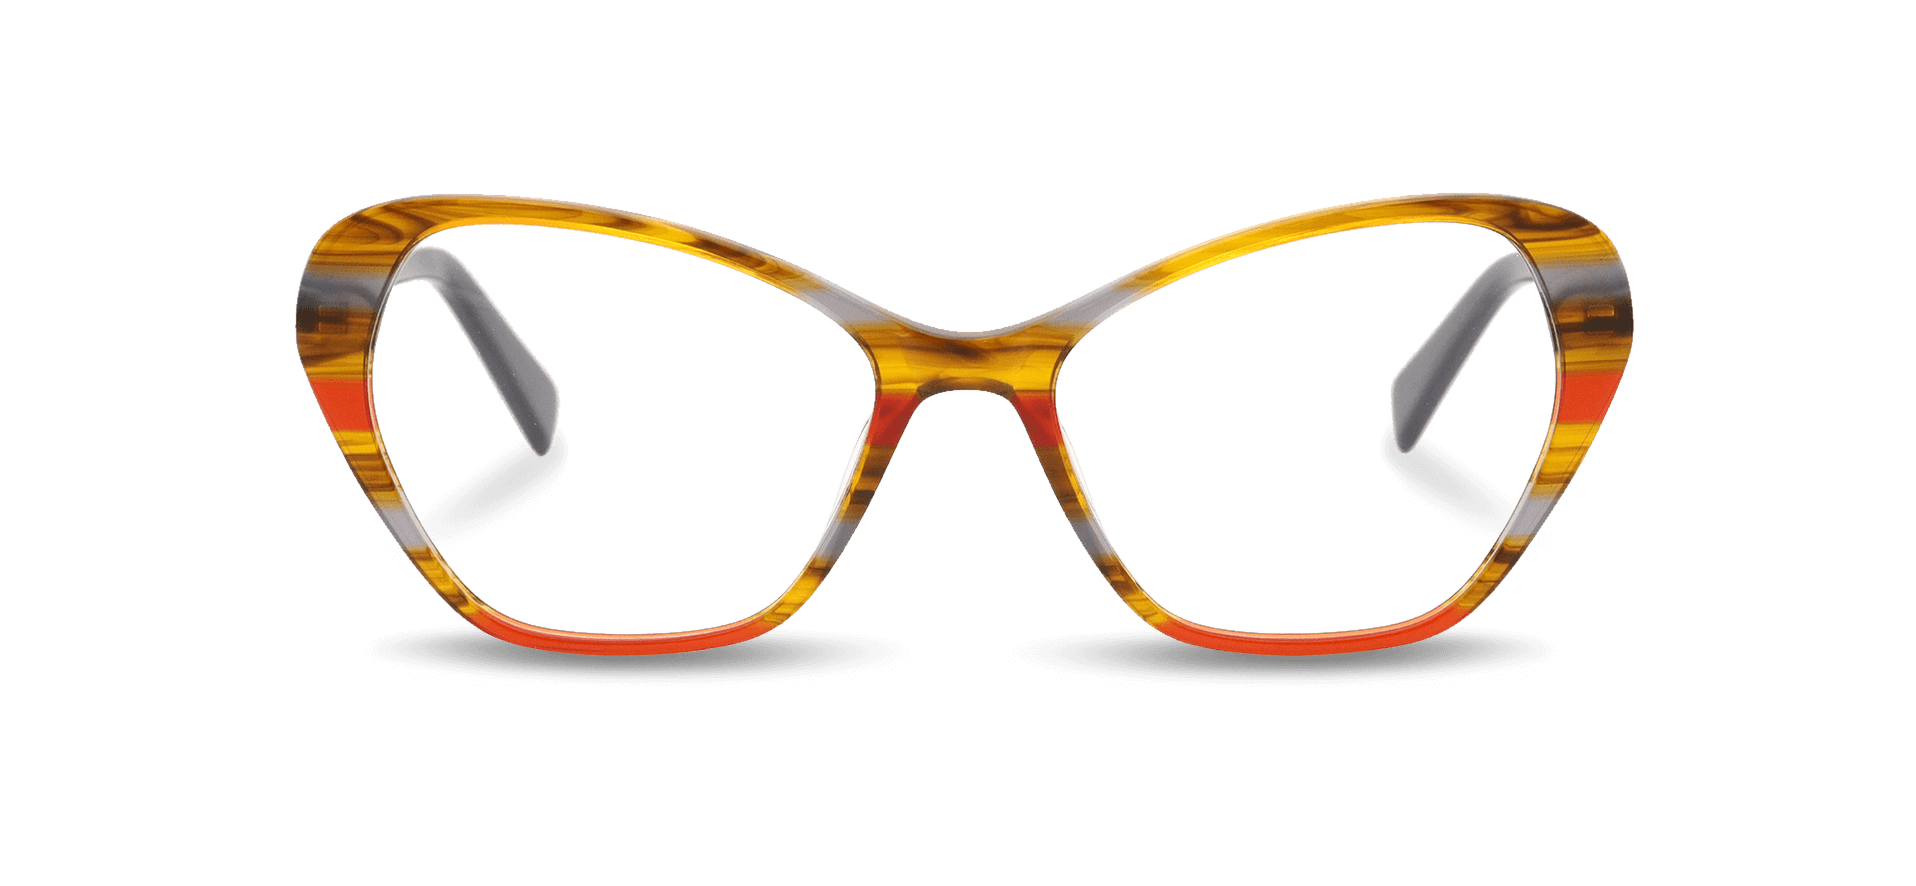 Kacamata bacaan warna-warni